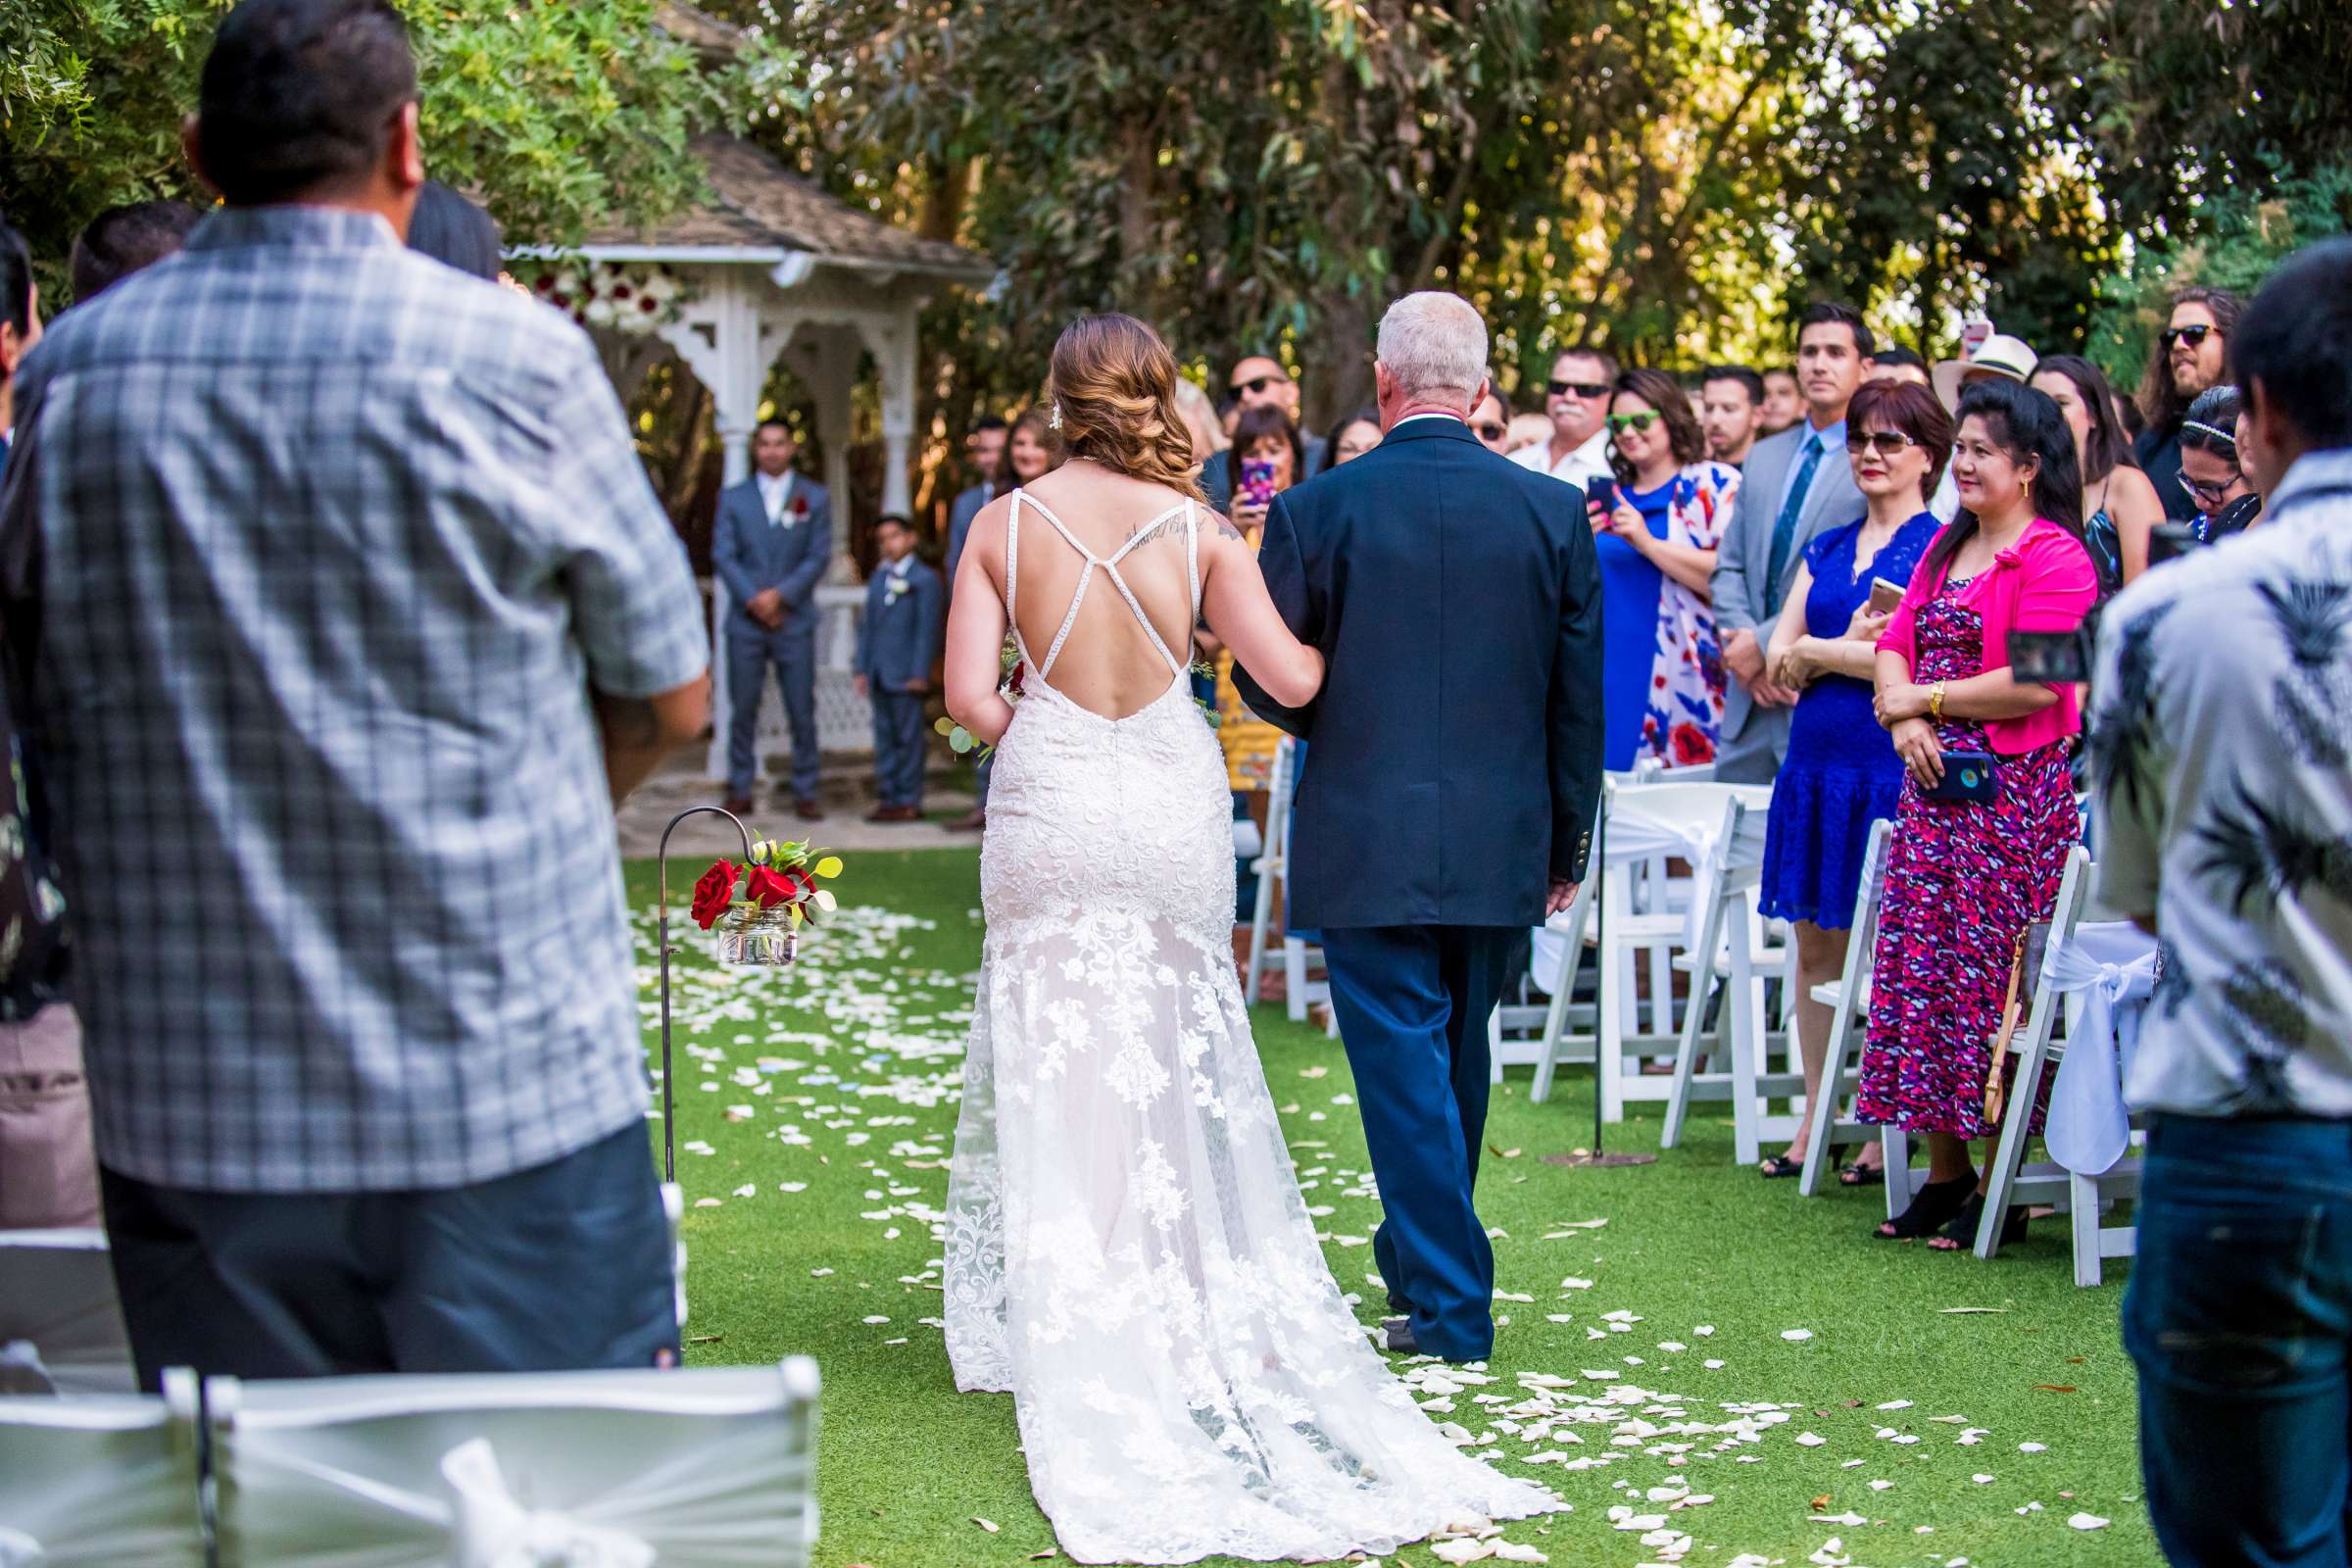 Twin Oaks House & Gardens Wedding Estate Wedding, Merrilynn and Trey Wedding Photo #77 by True Photography